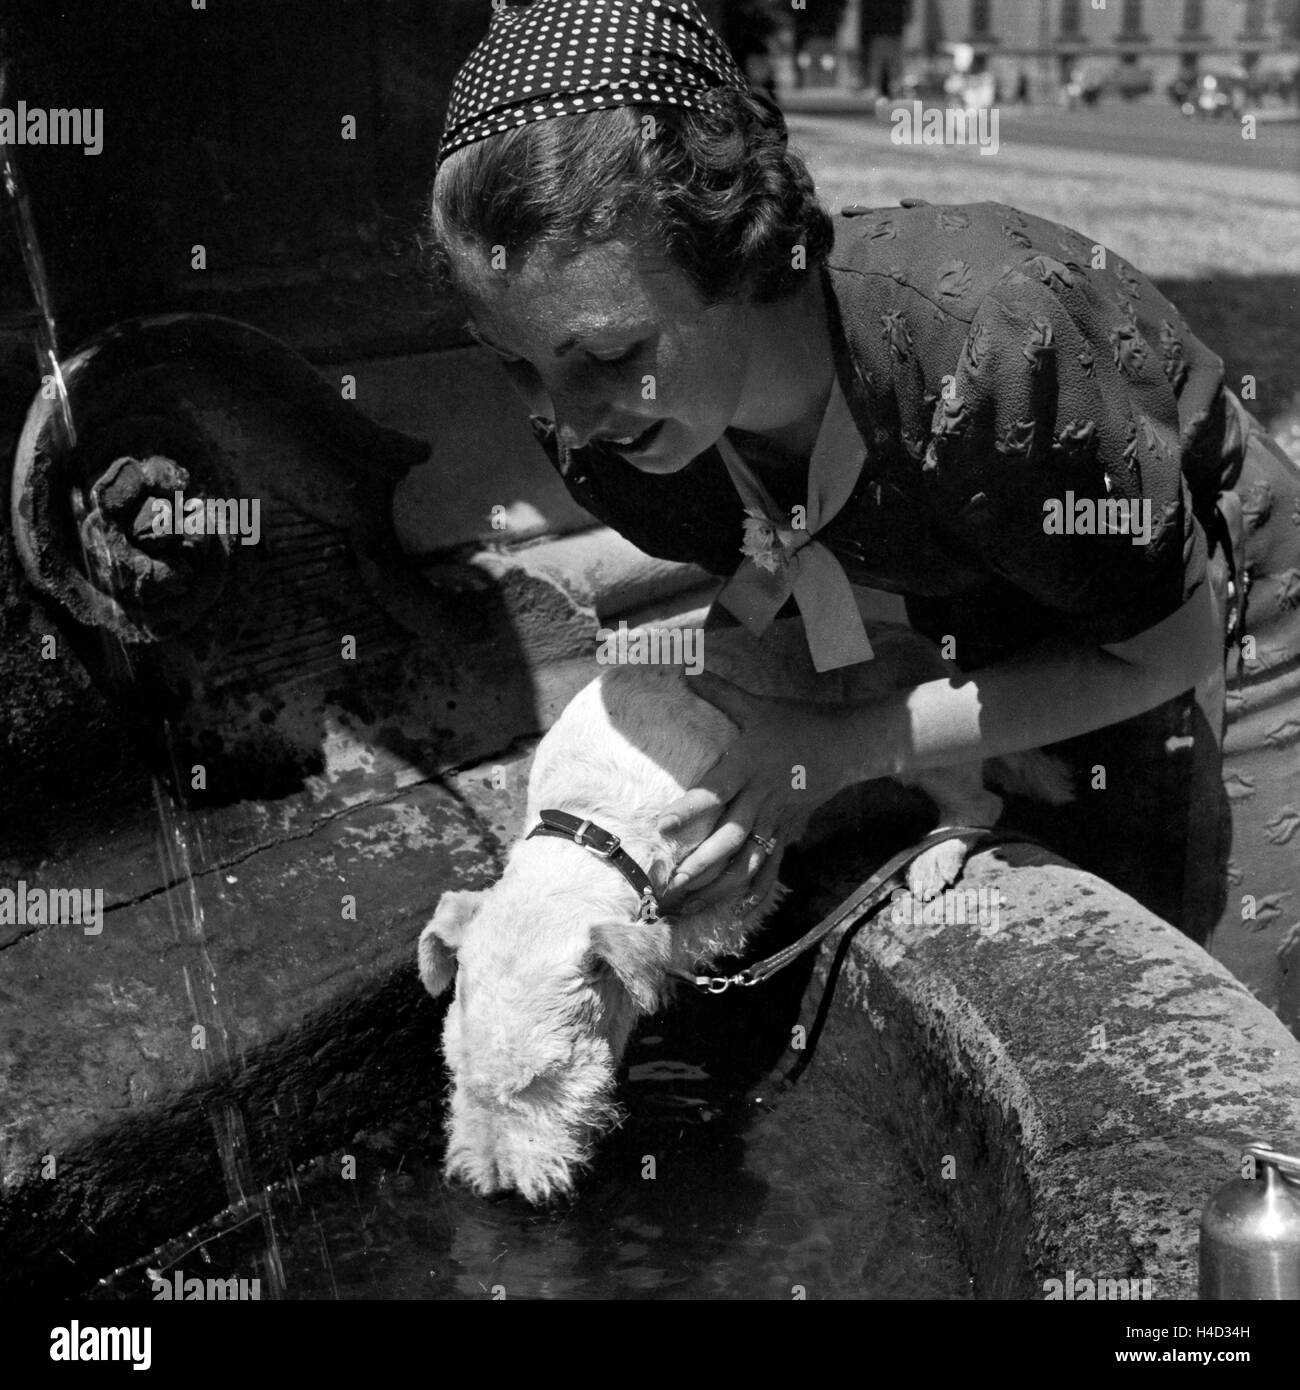 Eine Frau hebt ihren Foxterrier zum Trinken un einen Brunnen, Deutschland 1930er Jahre. Una donna sollevando il suo fox terrier per bere da un pozzo, Germania 1930s. Foto Stock